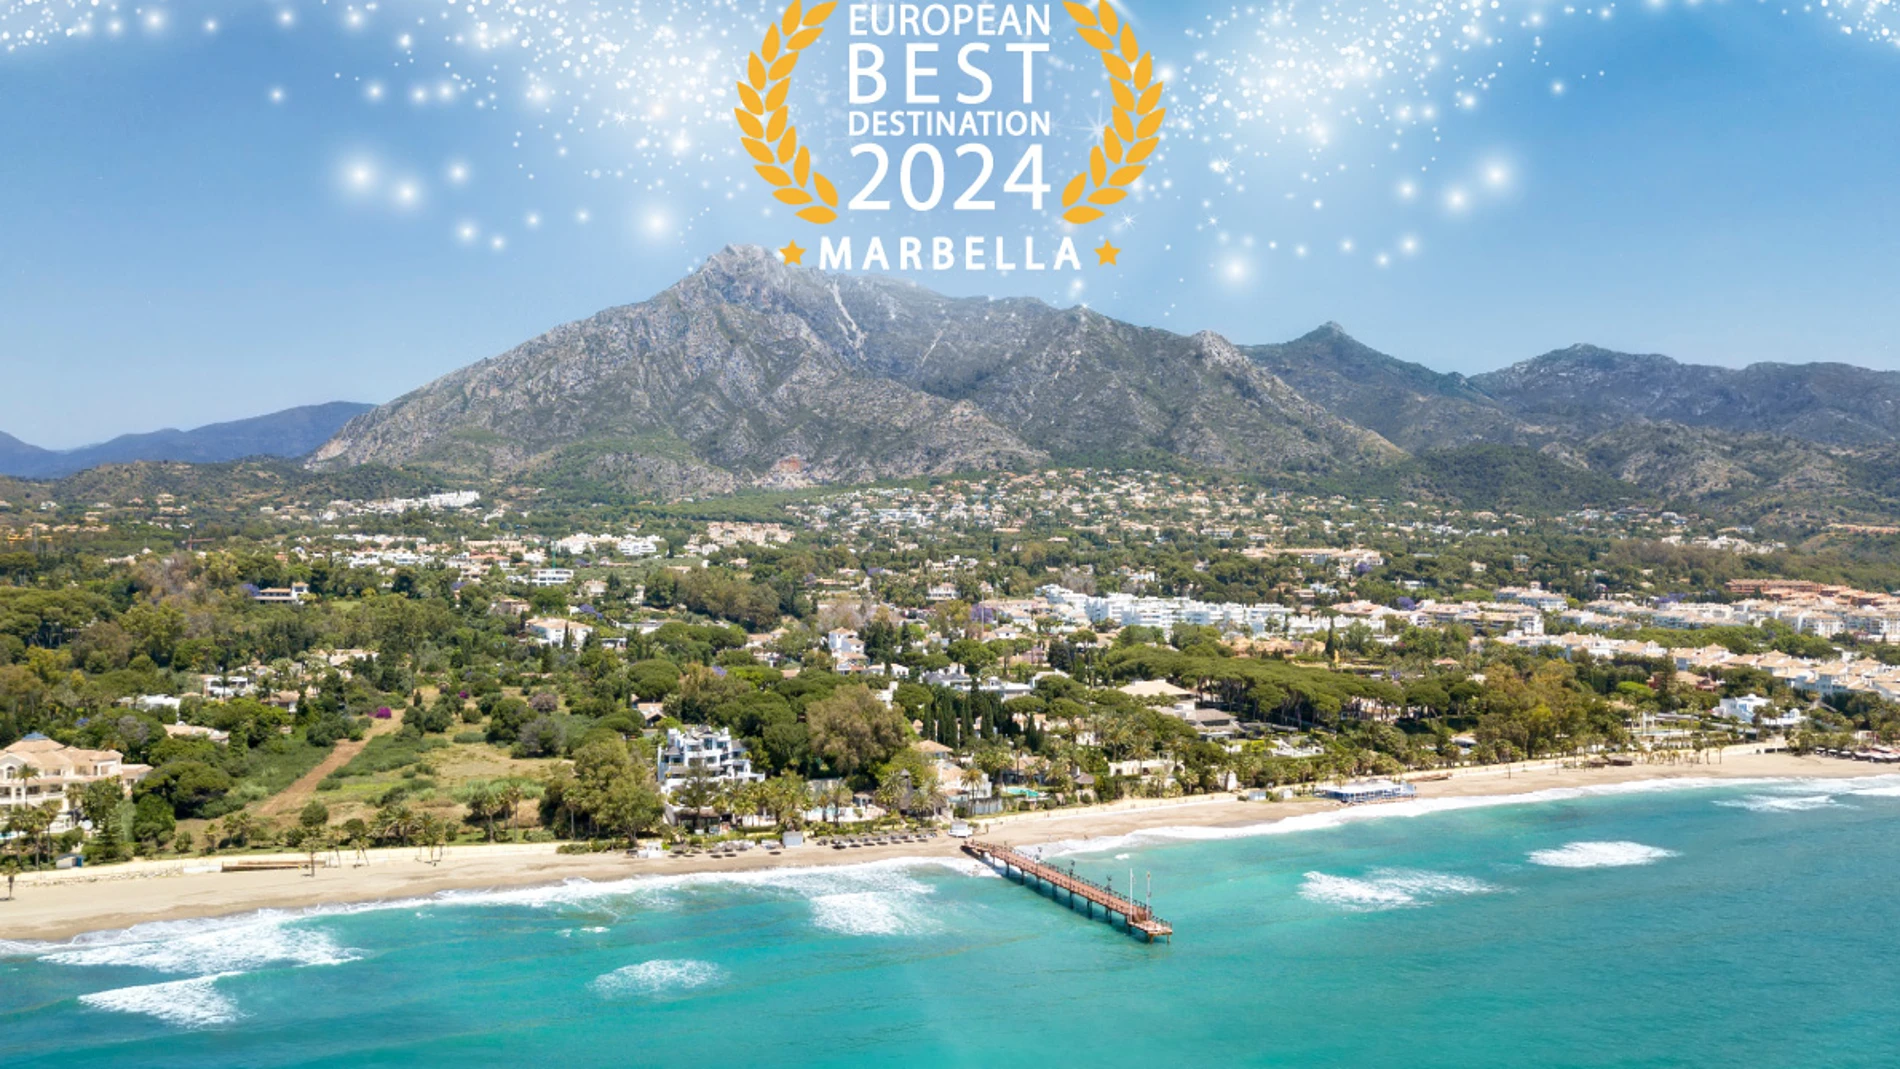 Marbella celebra su elección como mejor destino europeo para visitar en 2024